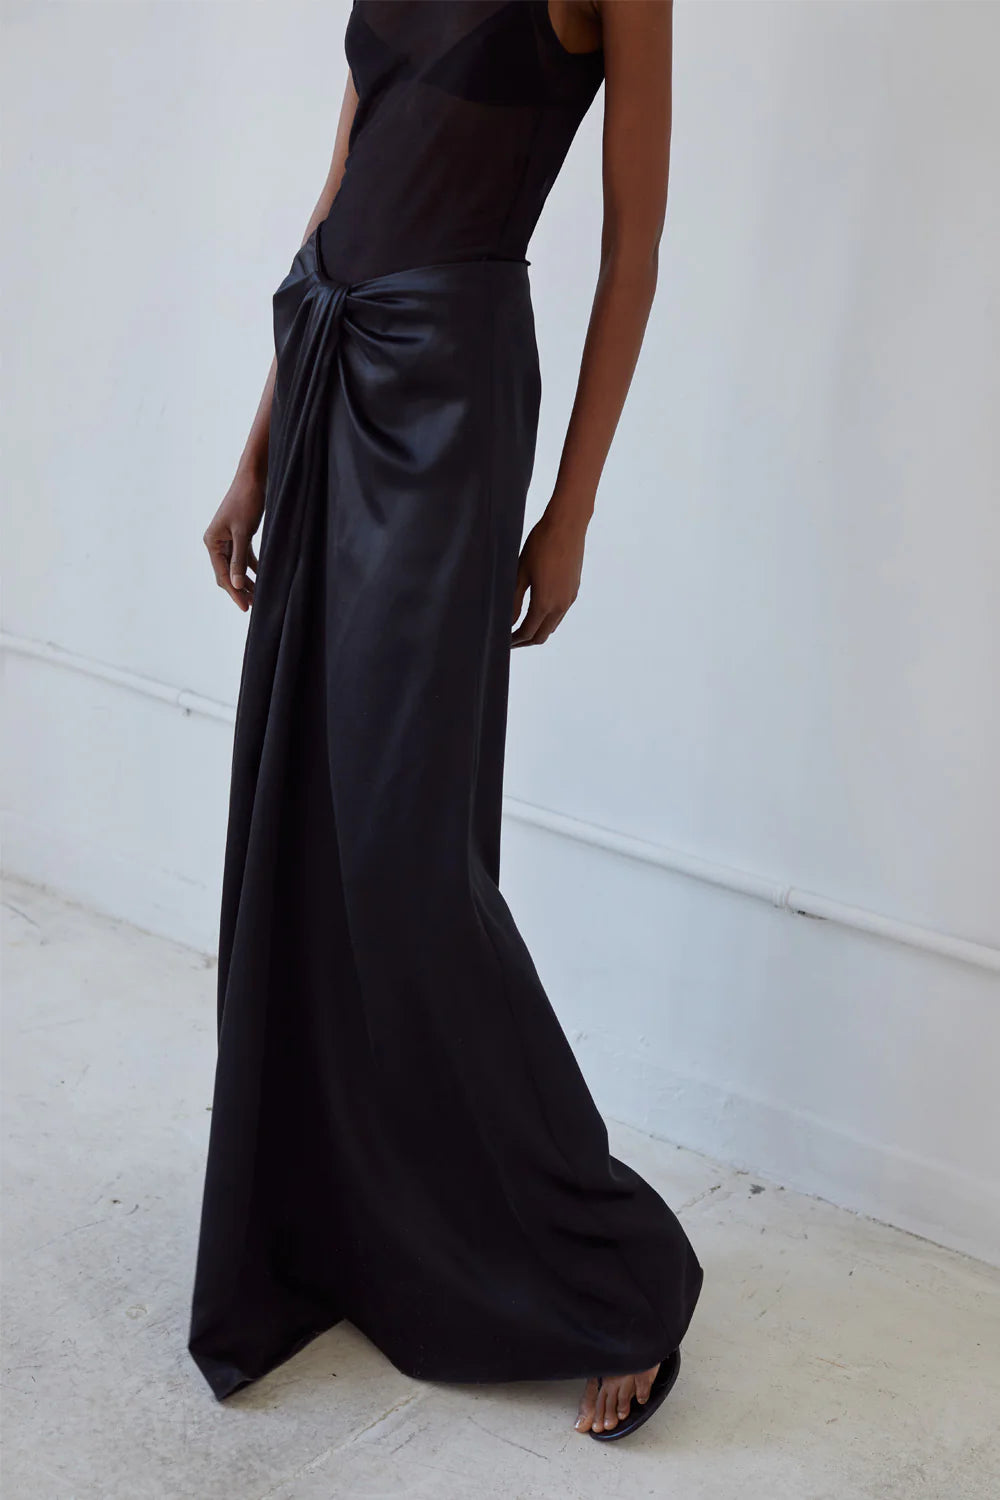 Leticia Skirt in Black